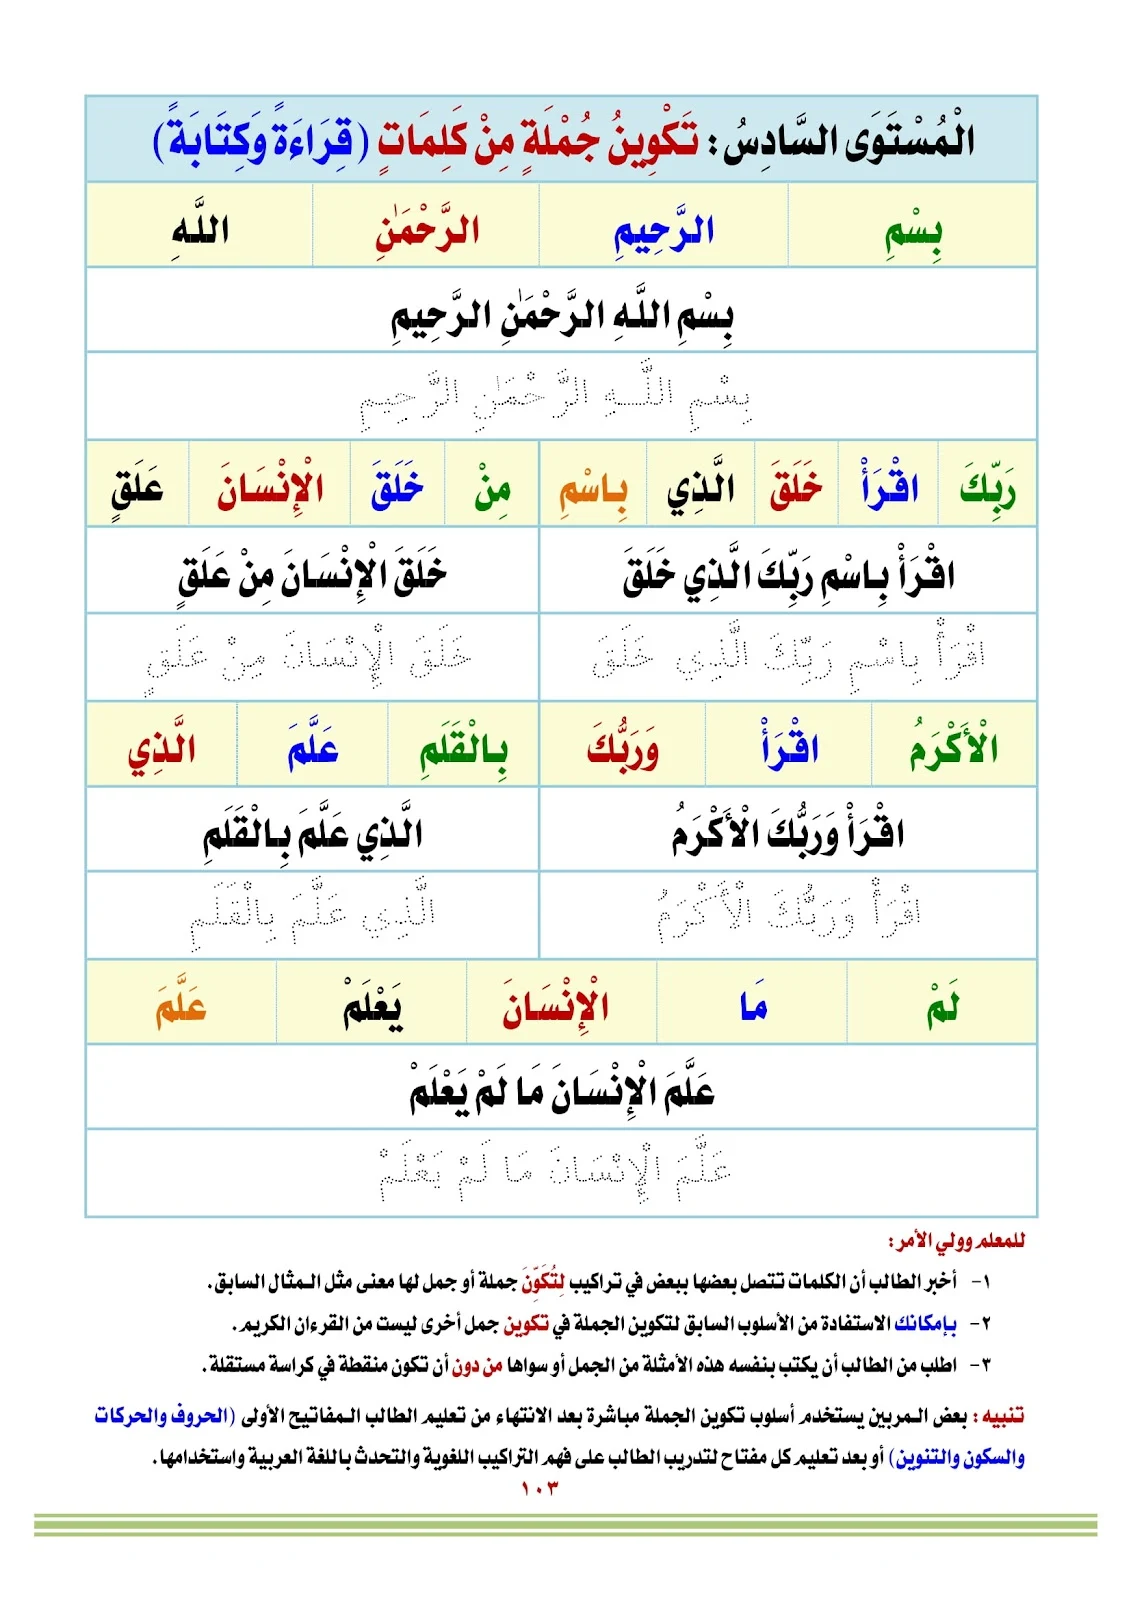 كتاب الأبجدية تعليم اللغة العربية بالقران الكريم pdf تحميل مباشر